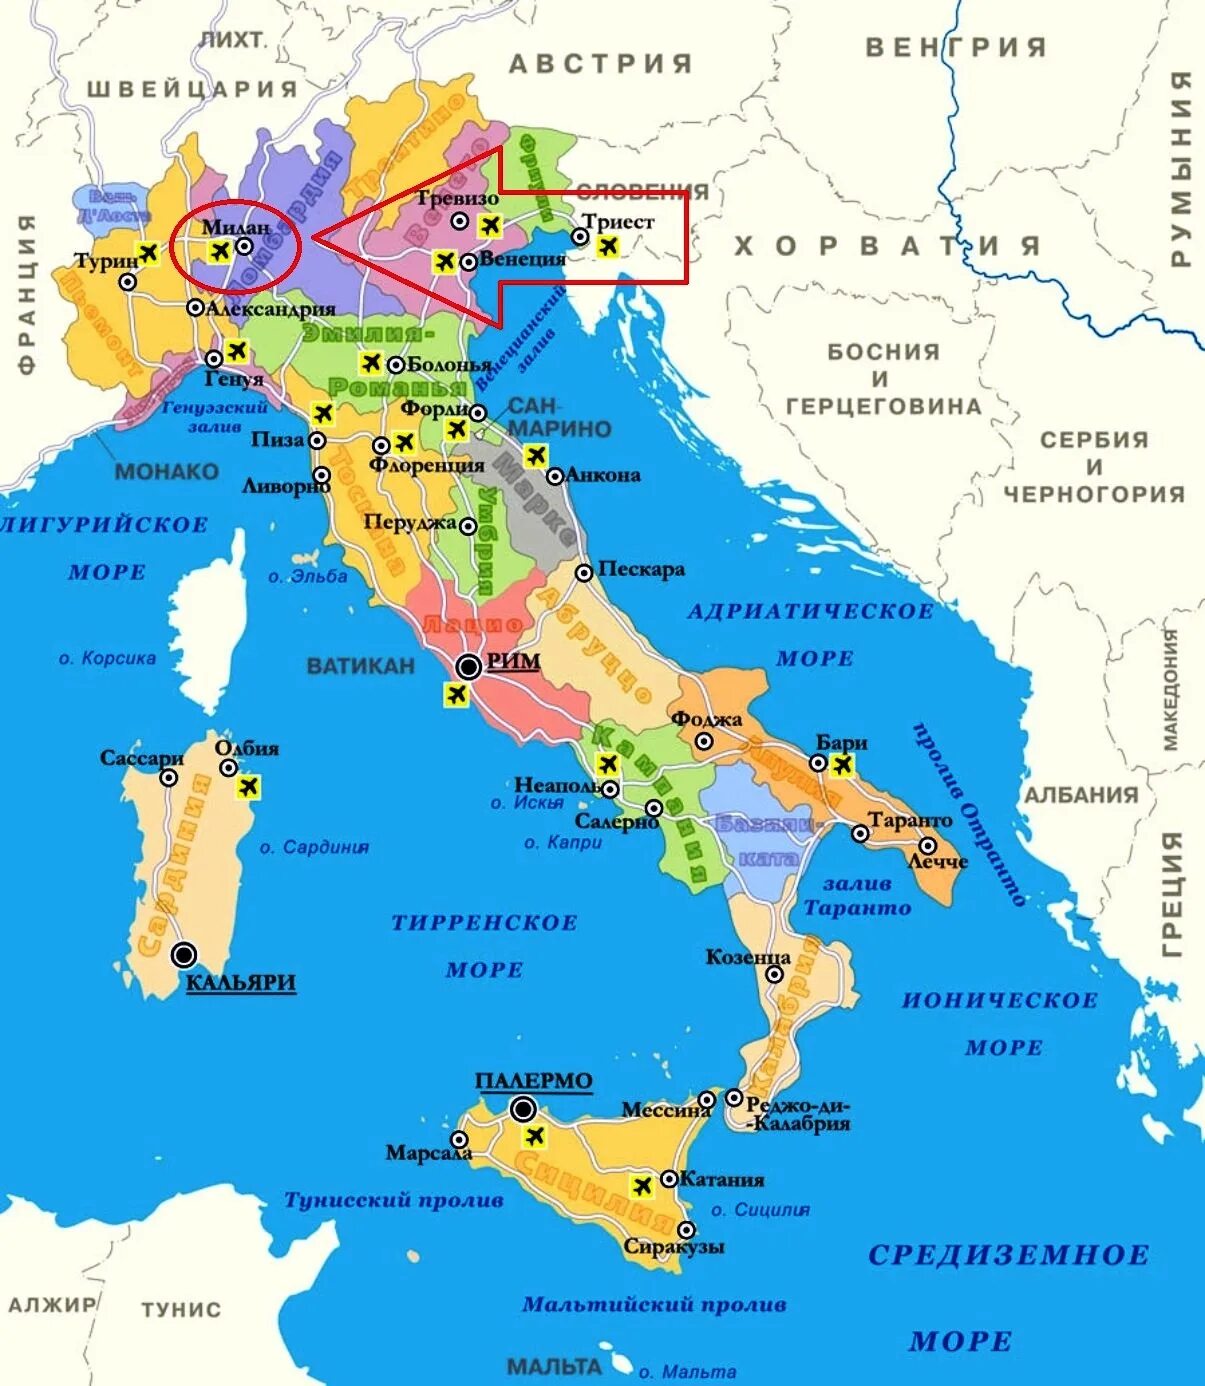 Аэропорты Италии на карте. Тоскана на карте Италии. Карта Италии на русском с городами и курортами. Географическое положение Италии на карте. Италия страна на карте